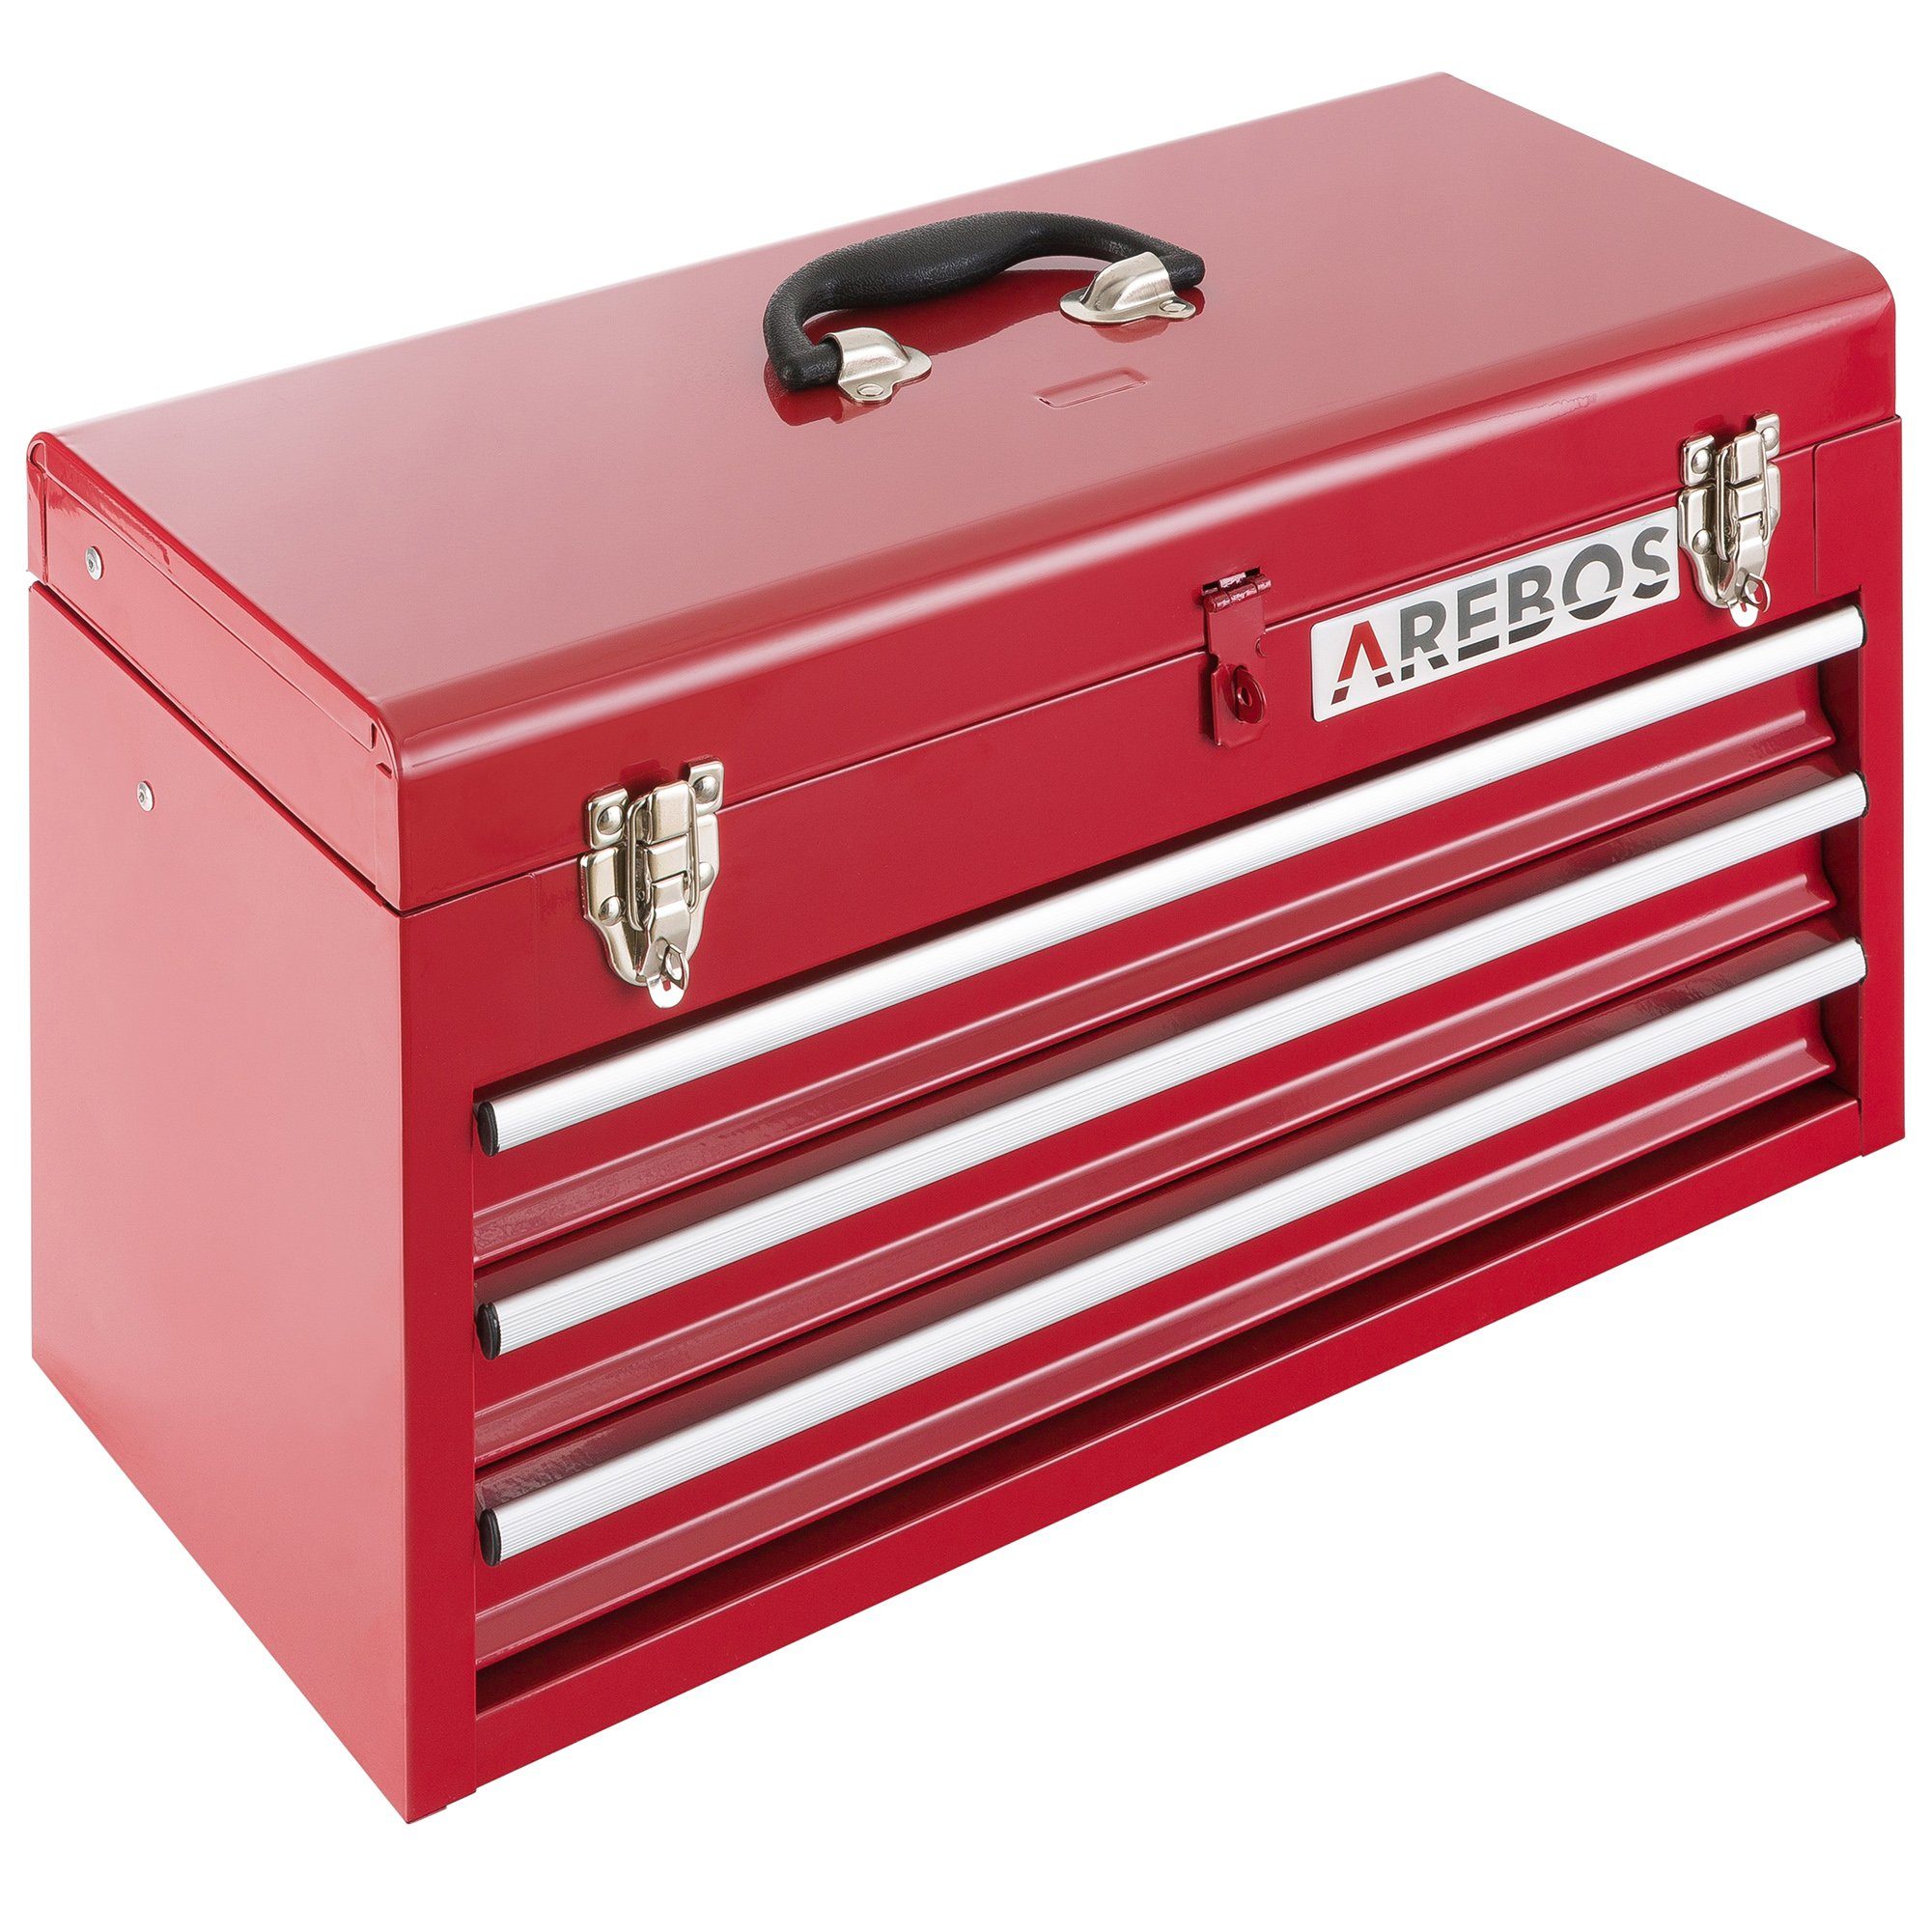 & rot Ablagefächern Arebos 3 Werkzeugkoffer 2 mit Schubladen